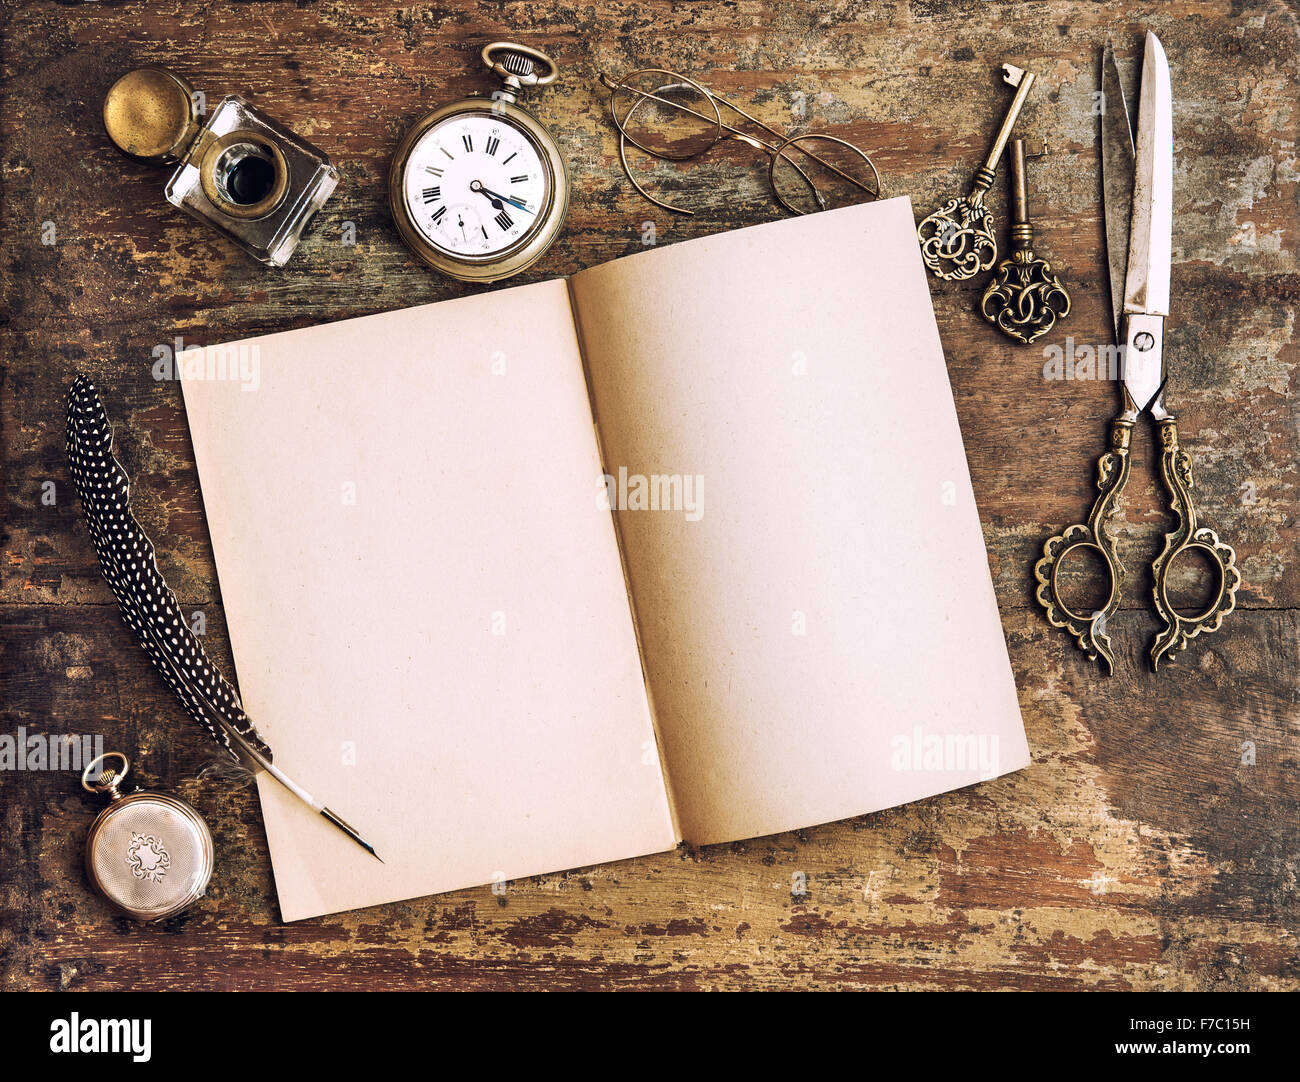 Diary book là một loại sổ tay cá nhân rất thông dụng và thú vị, được sử dụng để ghi lại những khoảnh khắc đáng nhớ trong cuộc sống. Hãy xem ngay hình ảnh liên quan để tìm hiểu về những cách thức sáng tạo và thú vị để sử dụng Diary book.